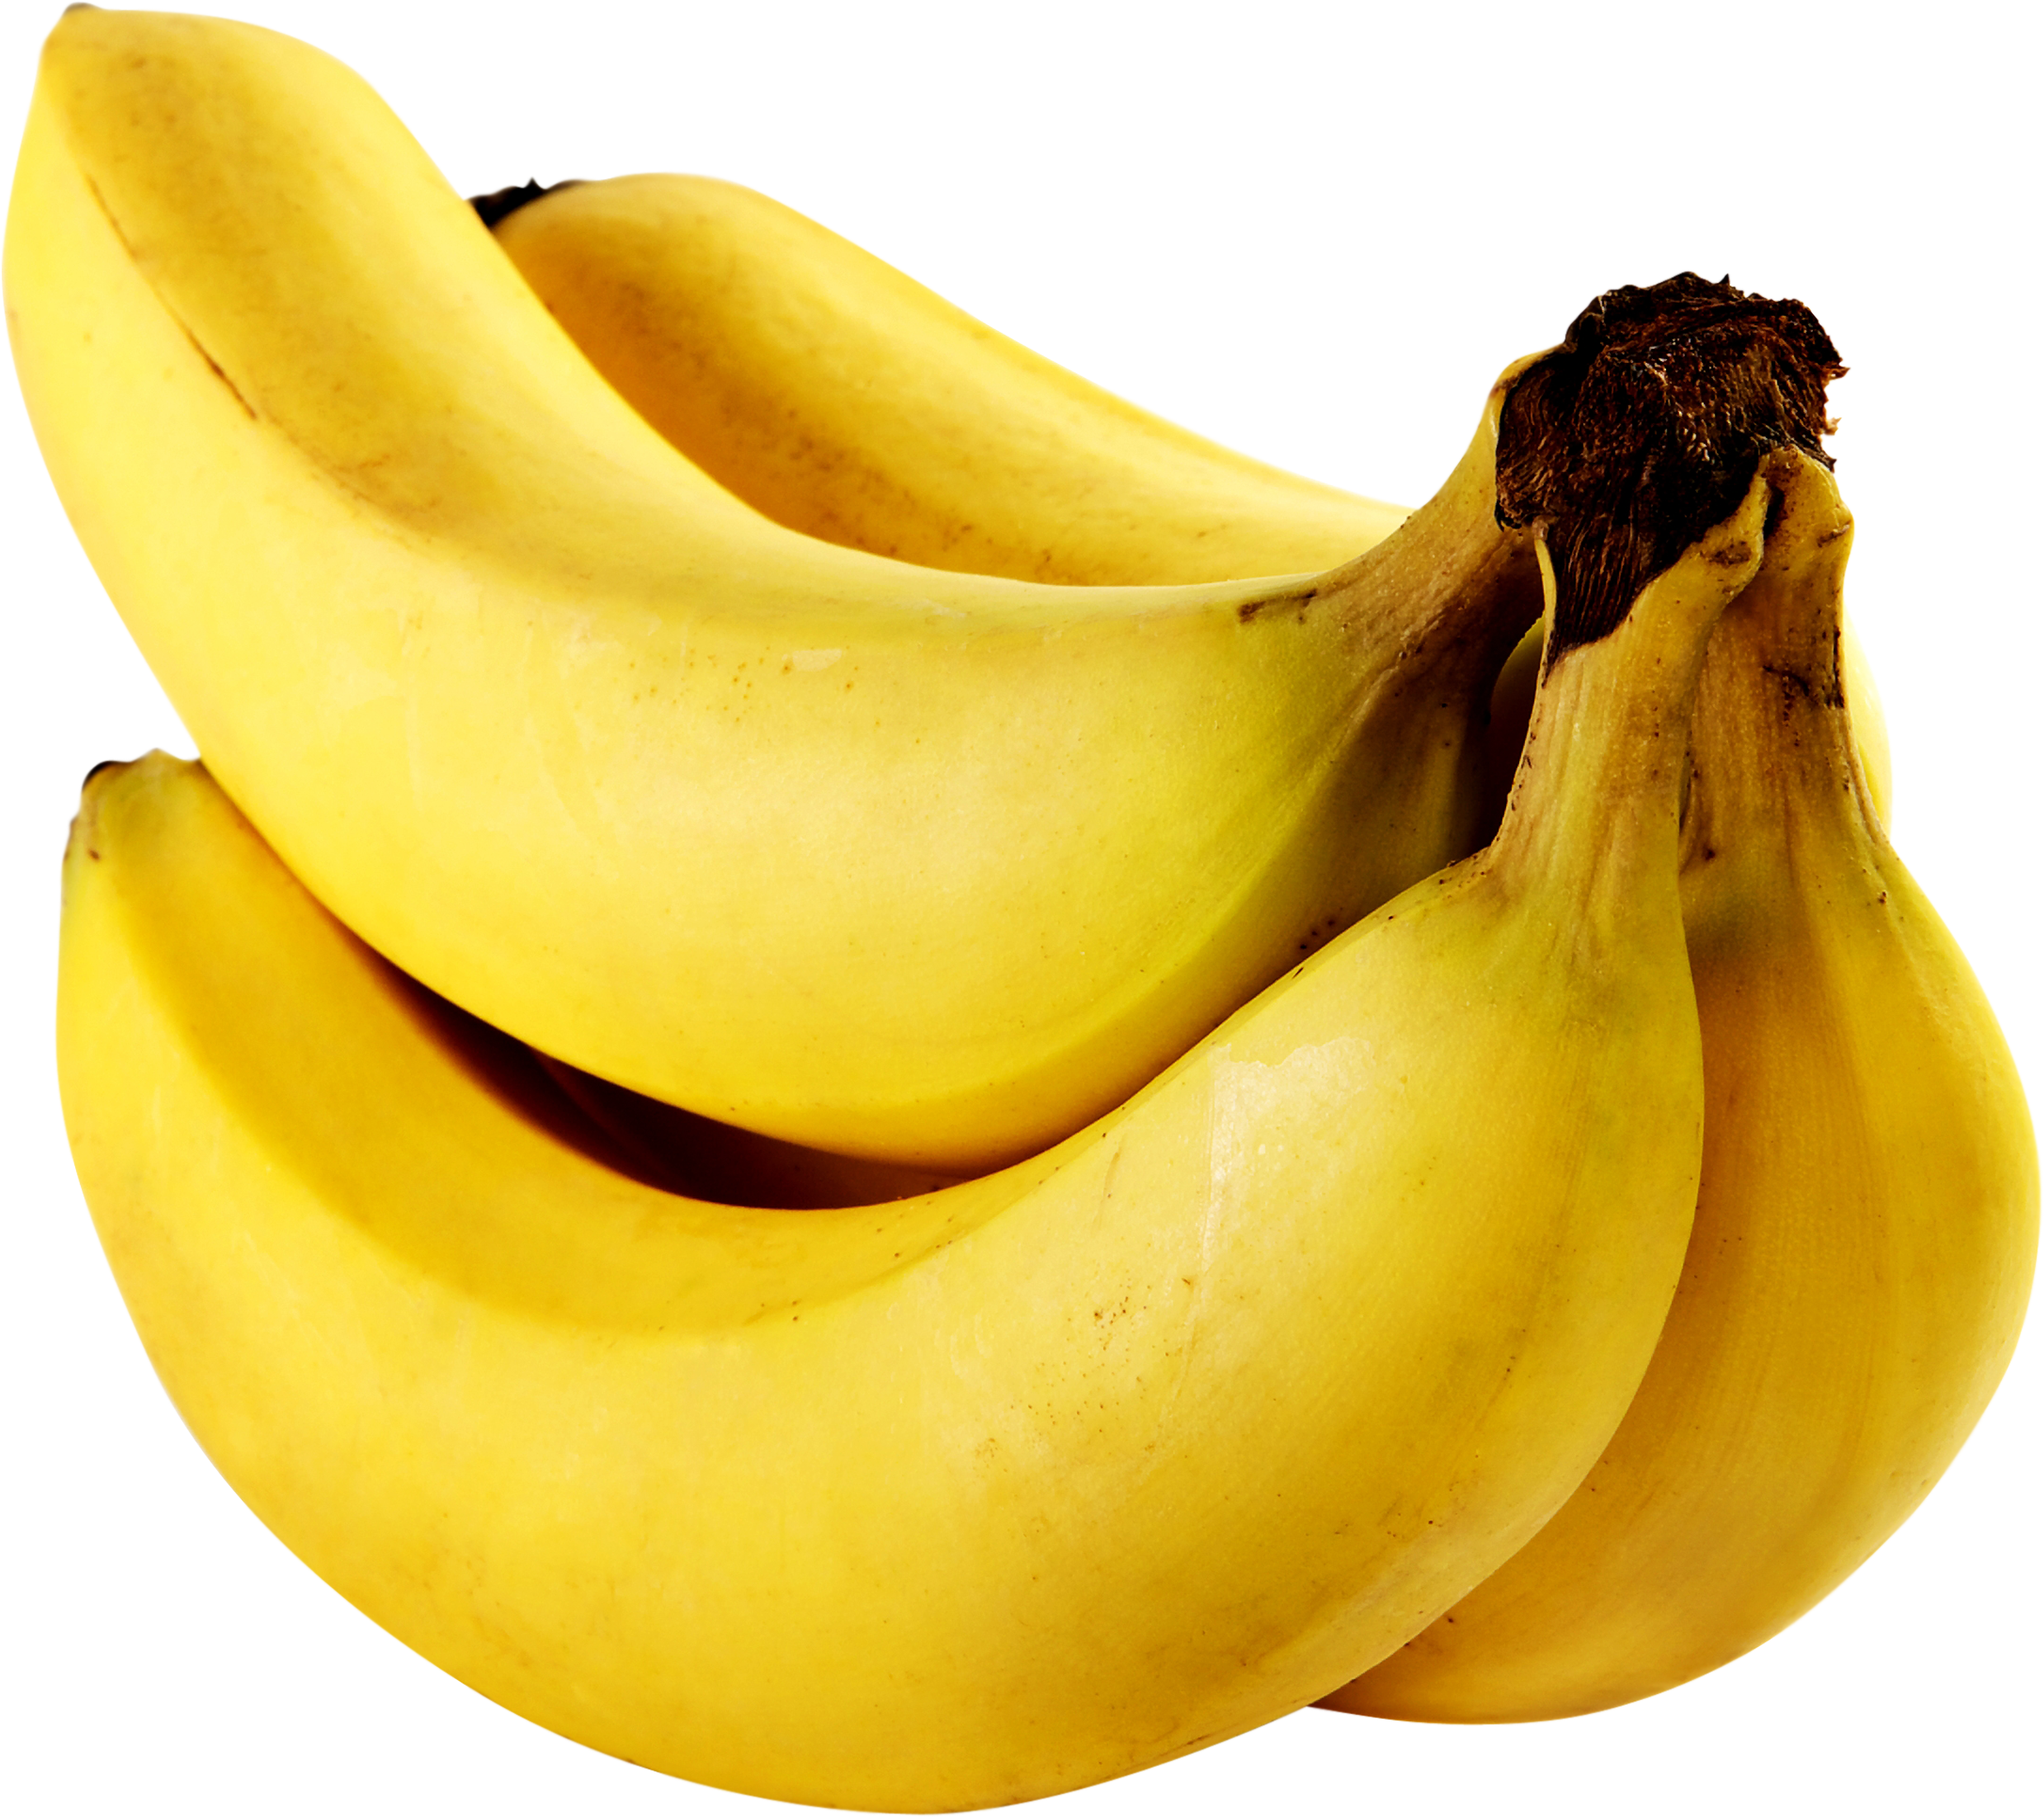 Banana Png Image, Bananas Picture Download - Banana, Transparent background PNG HD thumbnail